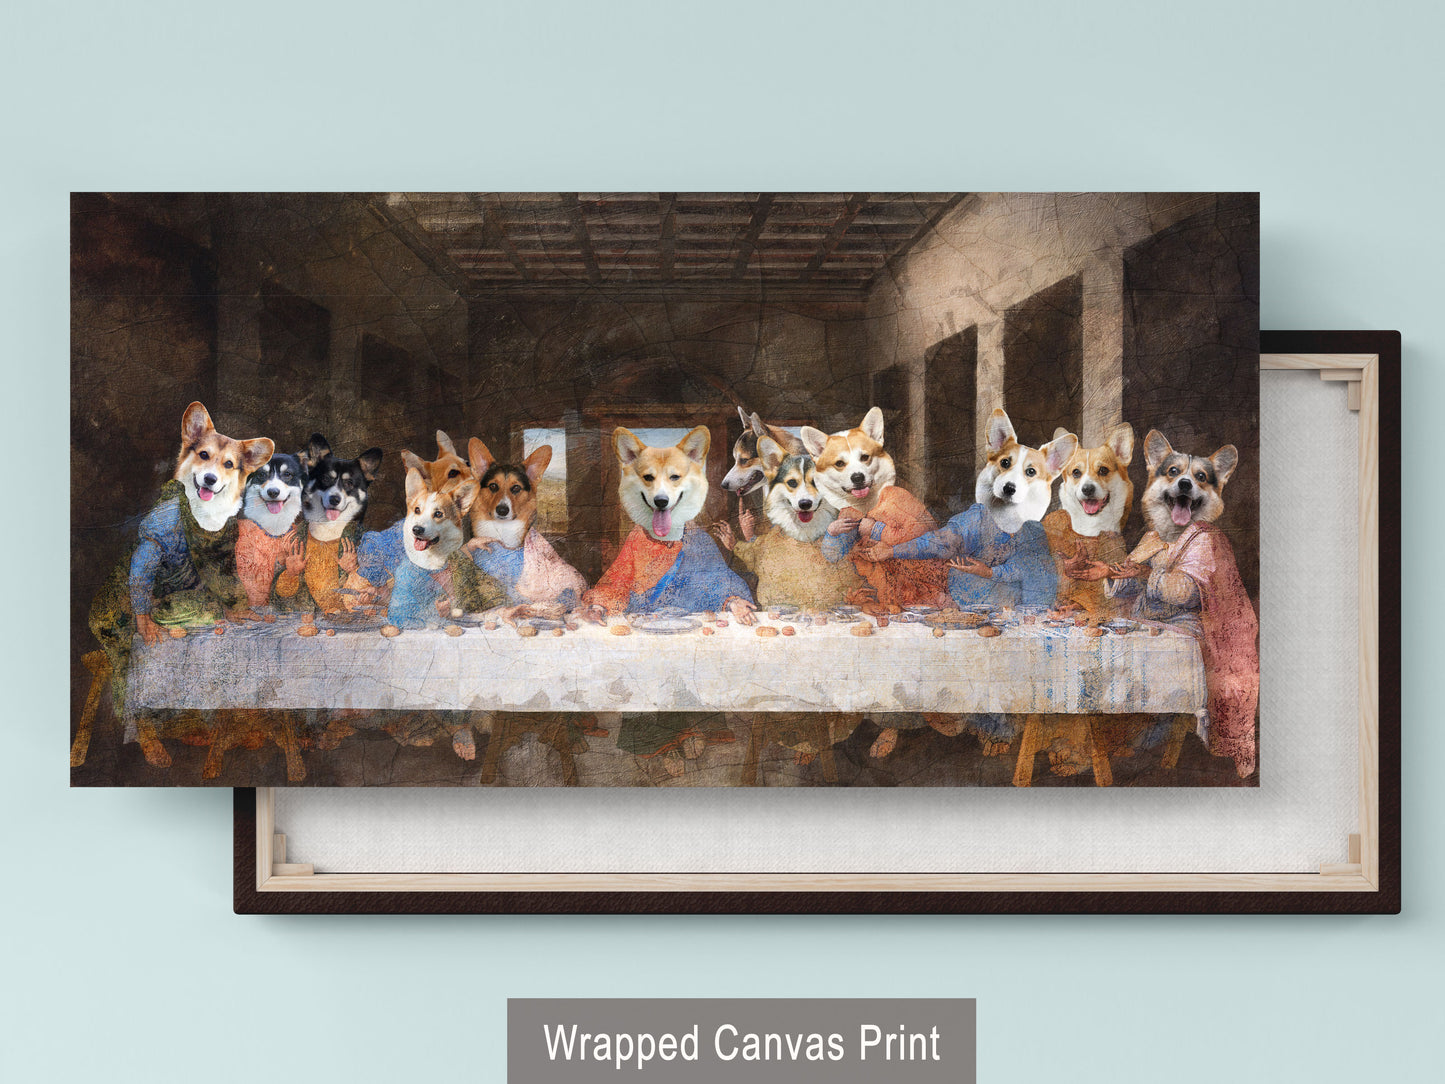 Pembroke Welsh Corgi Dog Art Last Supper Renaissance Painting